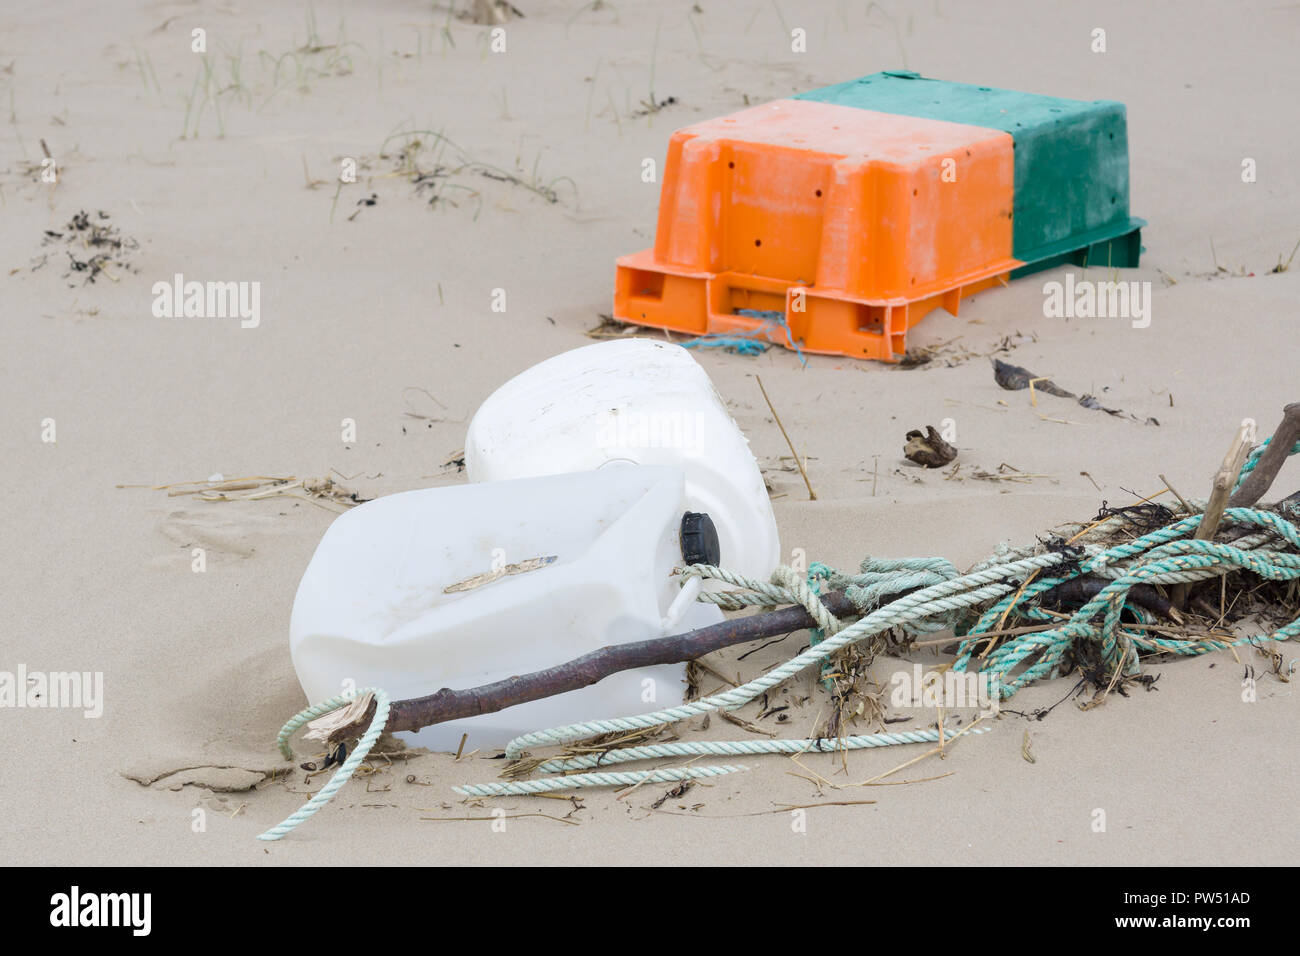 Le plastique déchets rejetés sur une plage et la partie enterrée dans le sable d'un exemple des nombreux morceaux d'ordures dans les océans du monde entier Banque D'Images